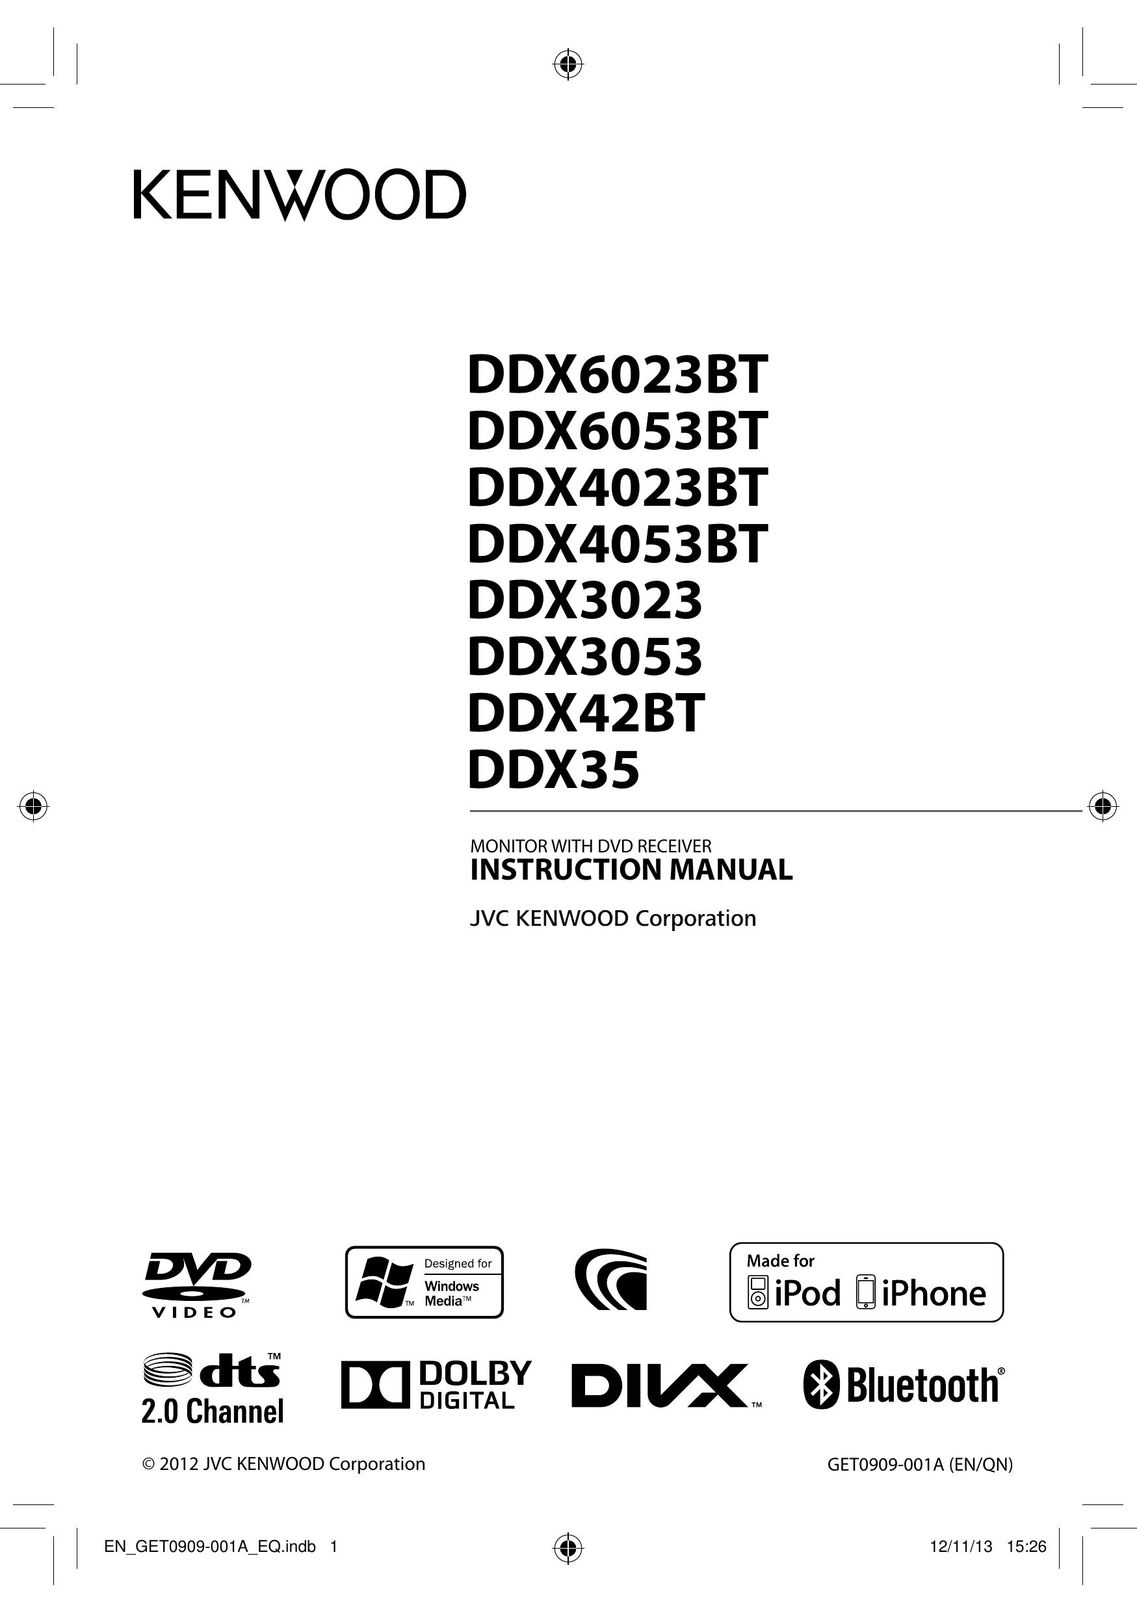 Kenwood DDX4023BT Car Video System User Manual